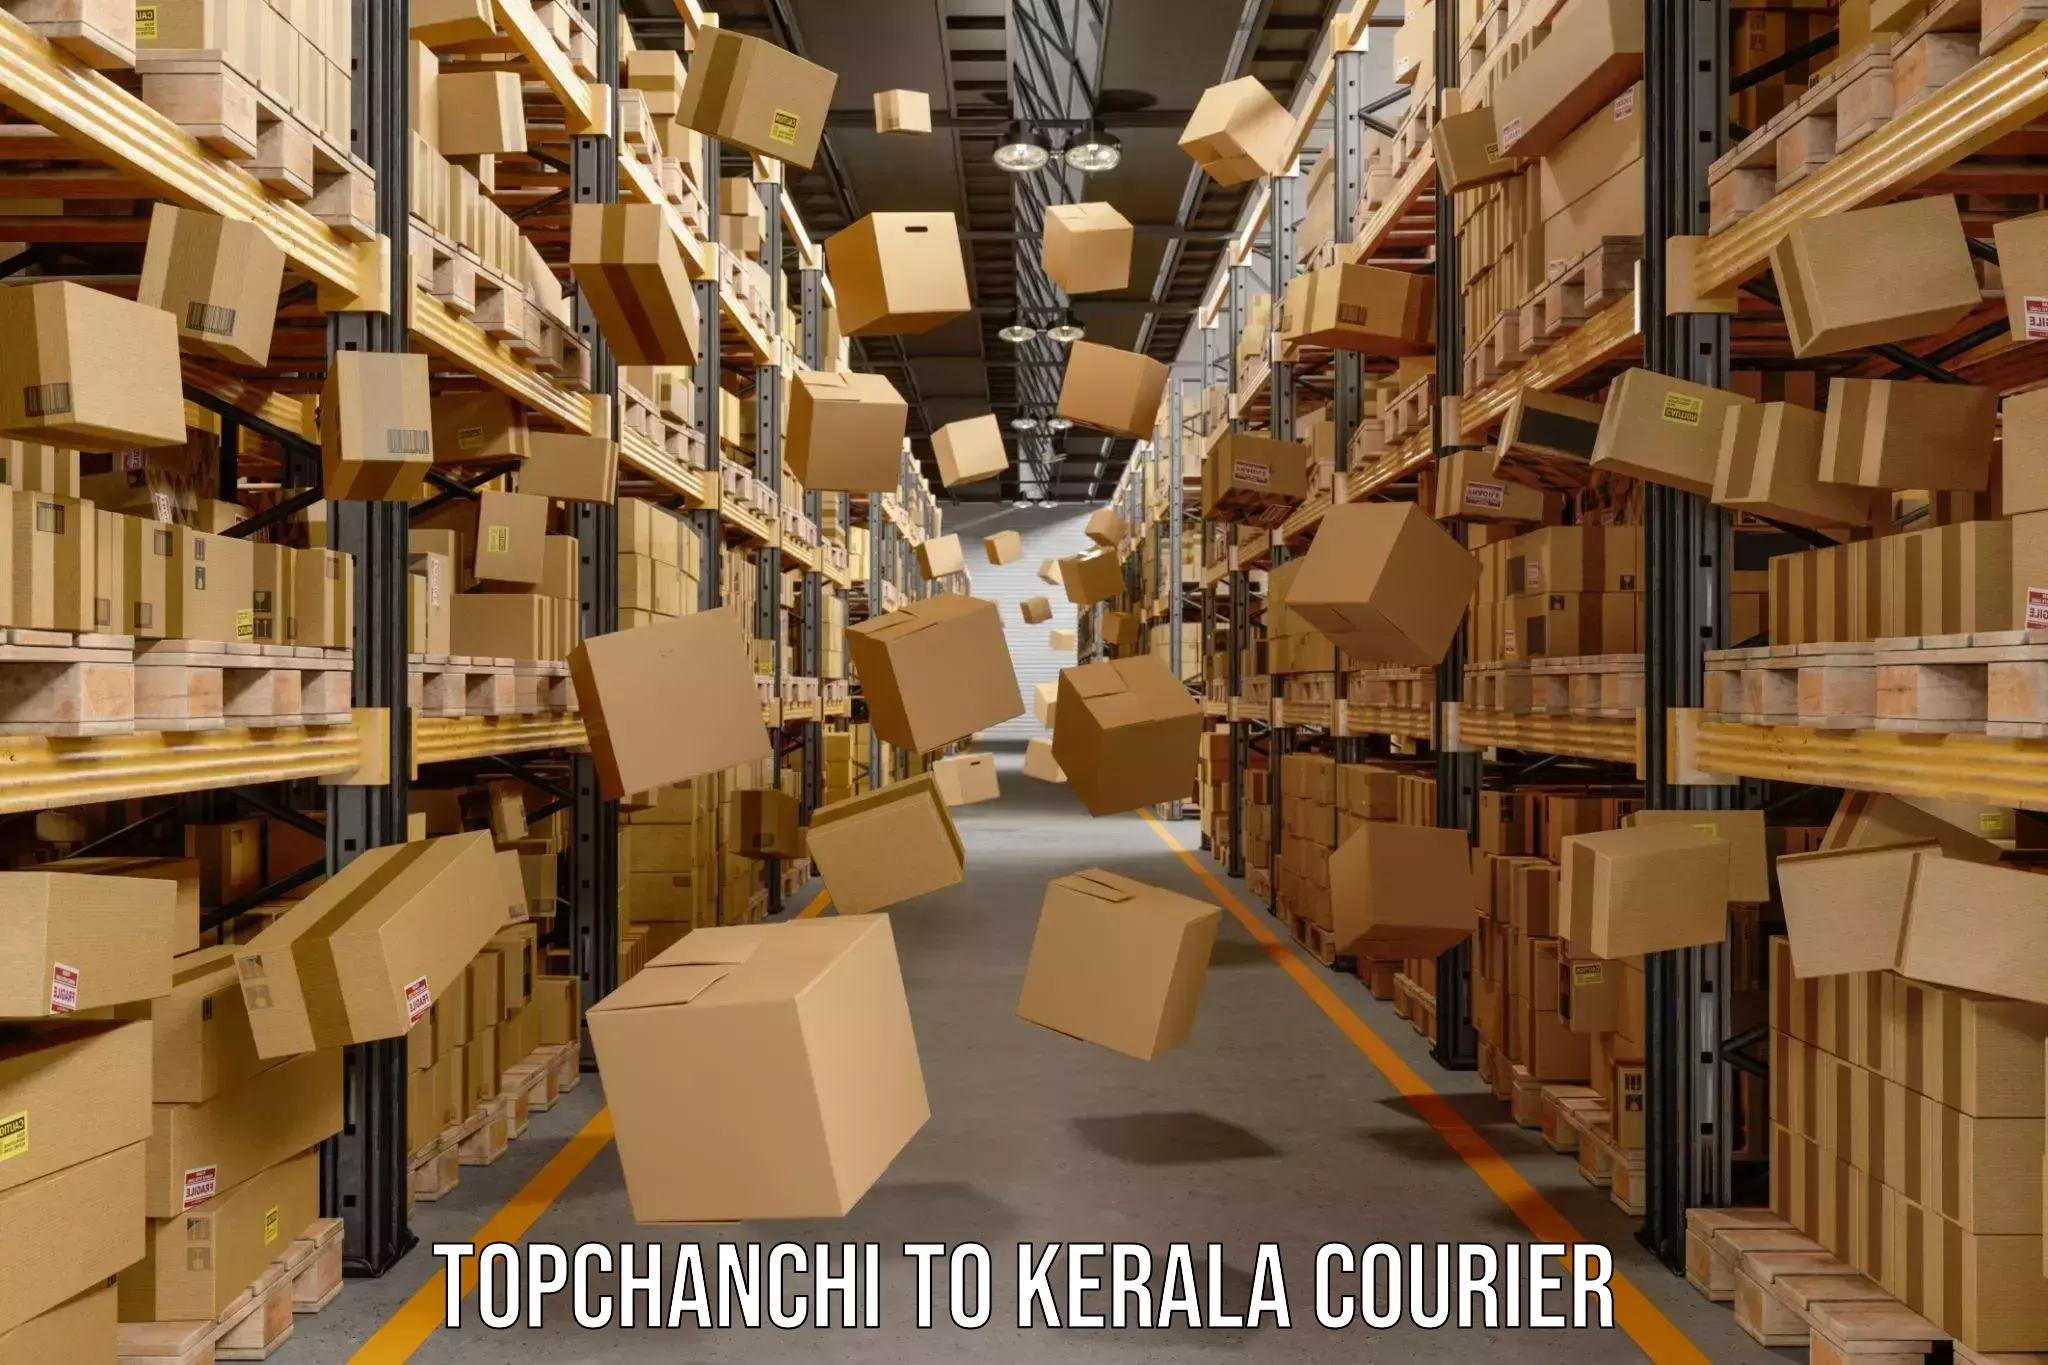 Custom courier packaging Topchanchi to Kerala